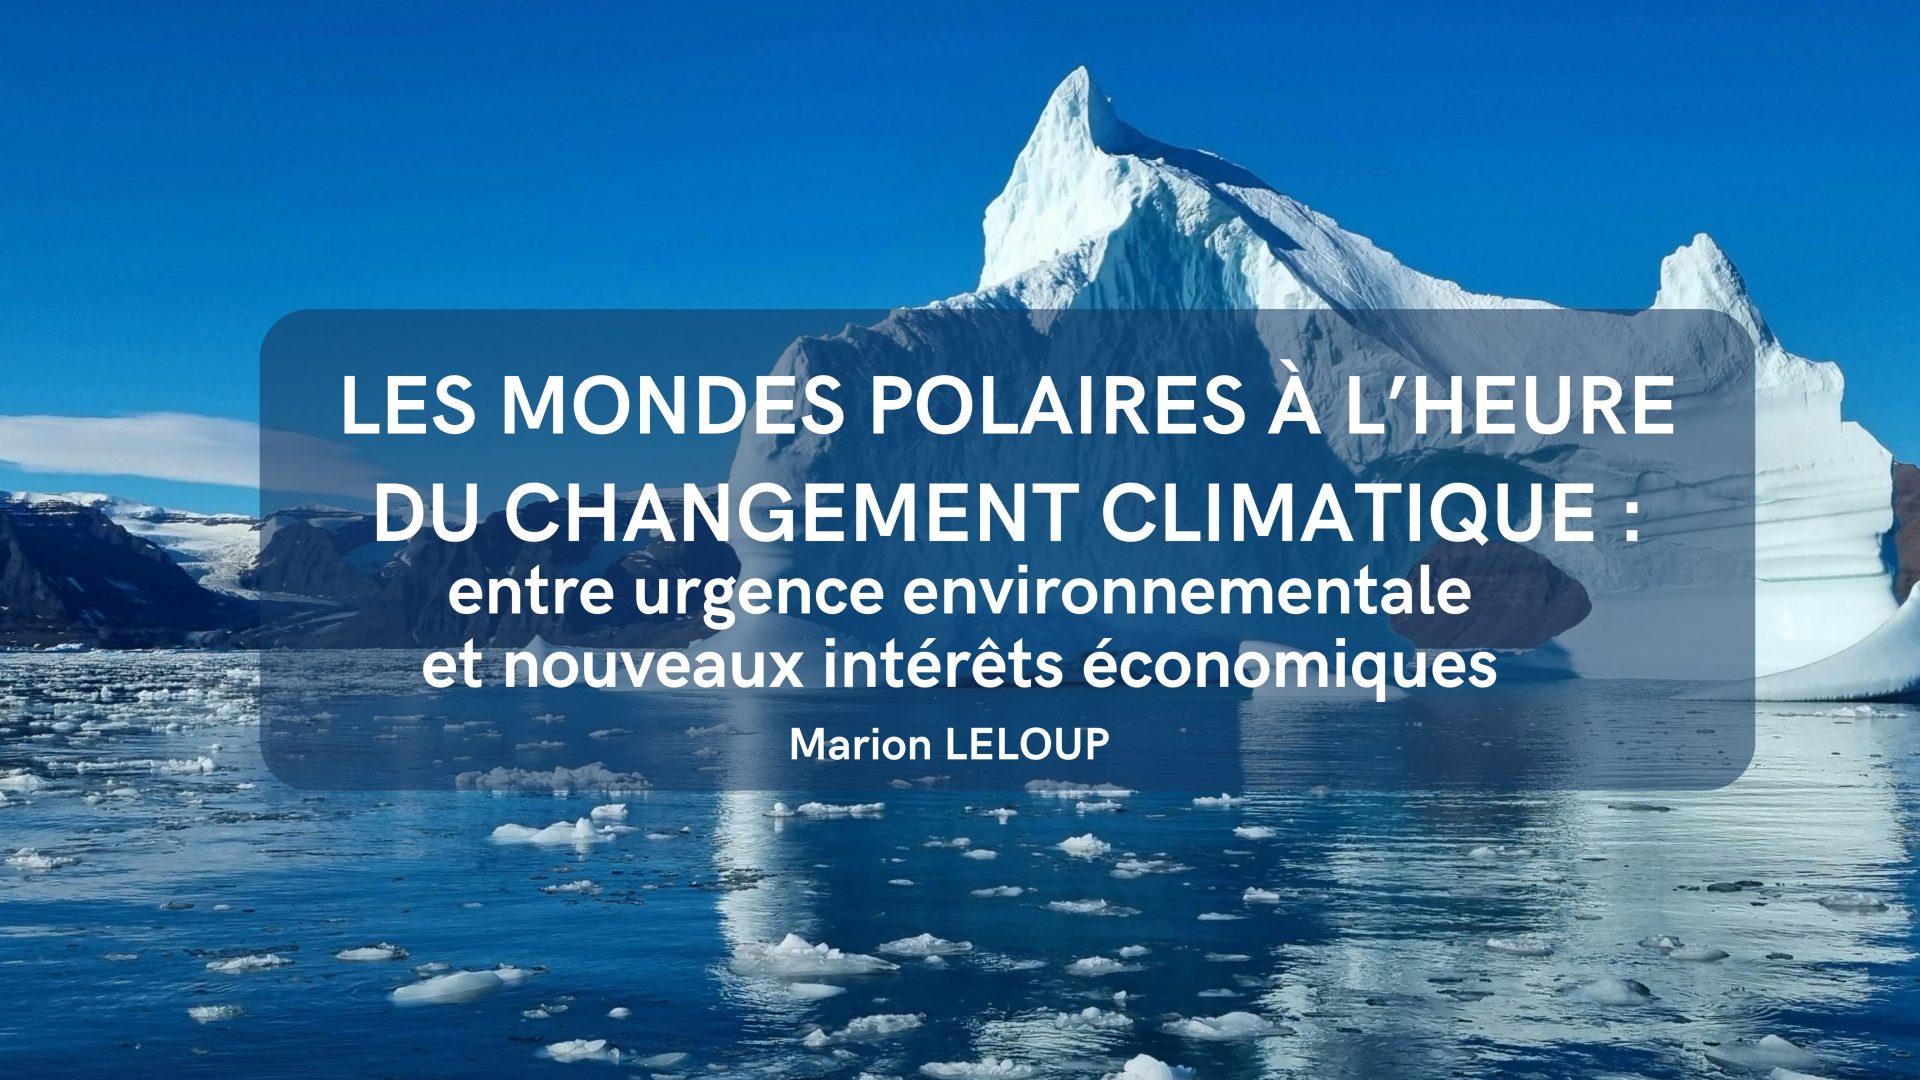 LES MONDES POLAIRES A L’HEURE DU CHANGEMENT CLIMATIQUE : ENTRE URGENCE ENVIRONNEMENTALE ET NOUVEAUX INTERETS ECONOMIQUES